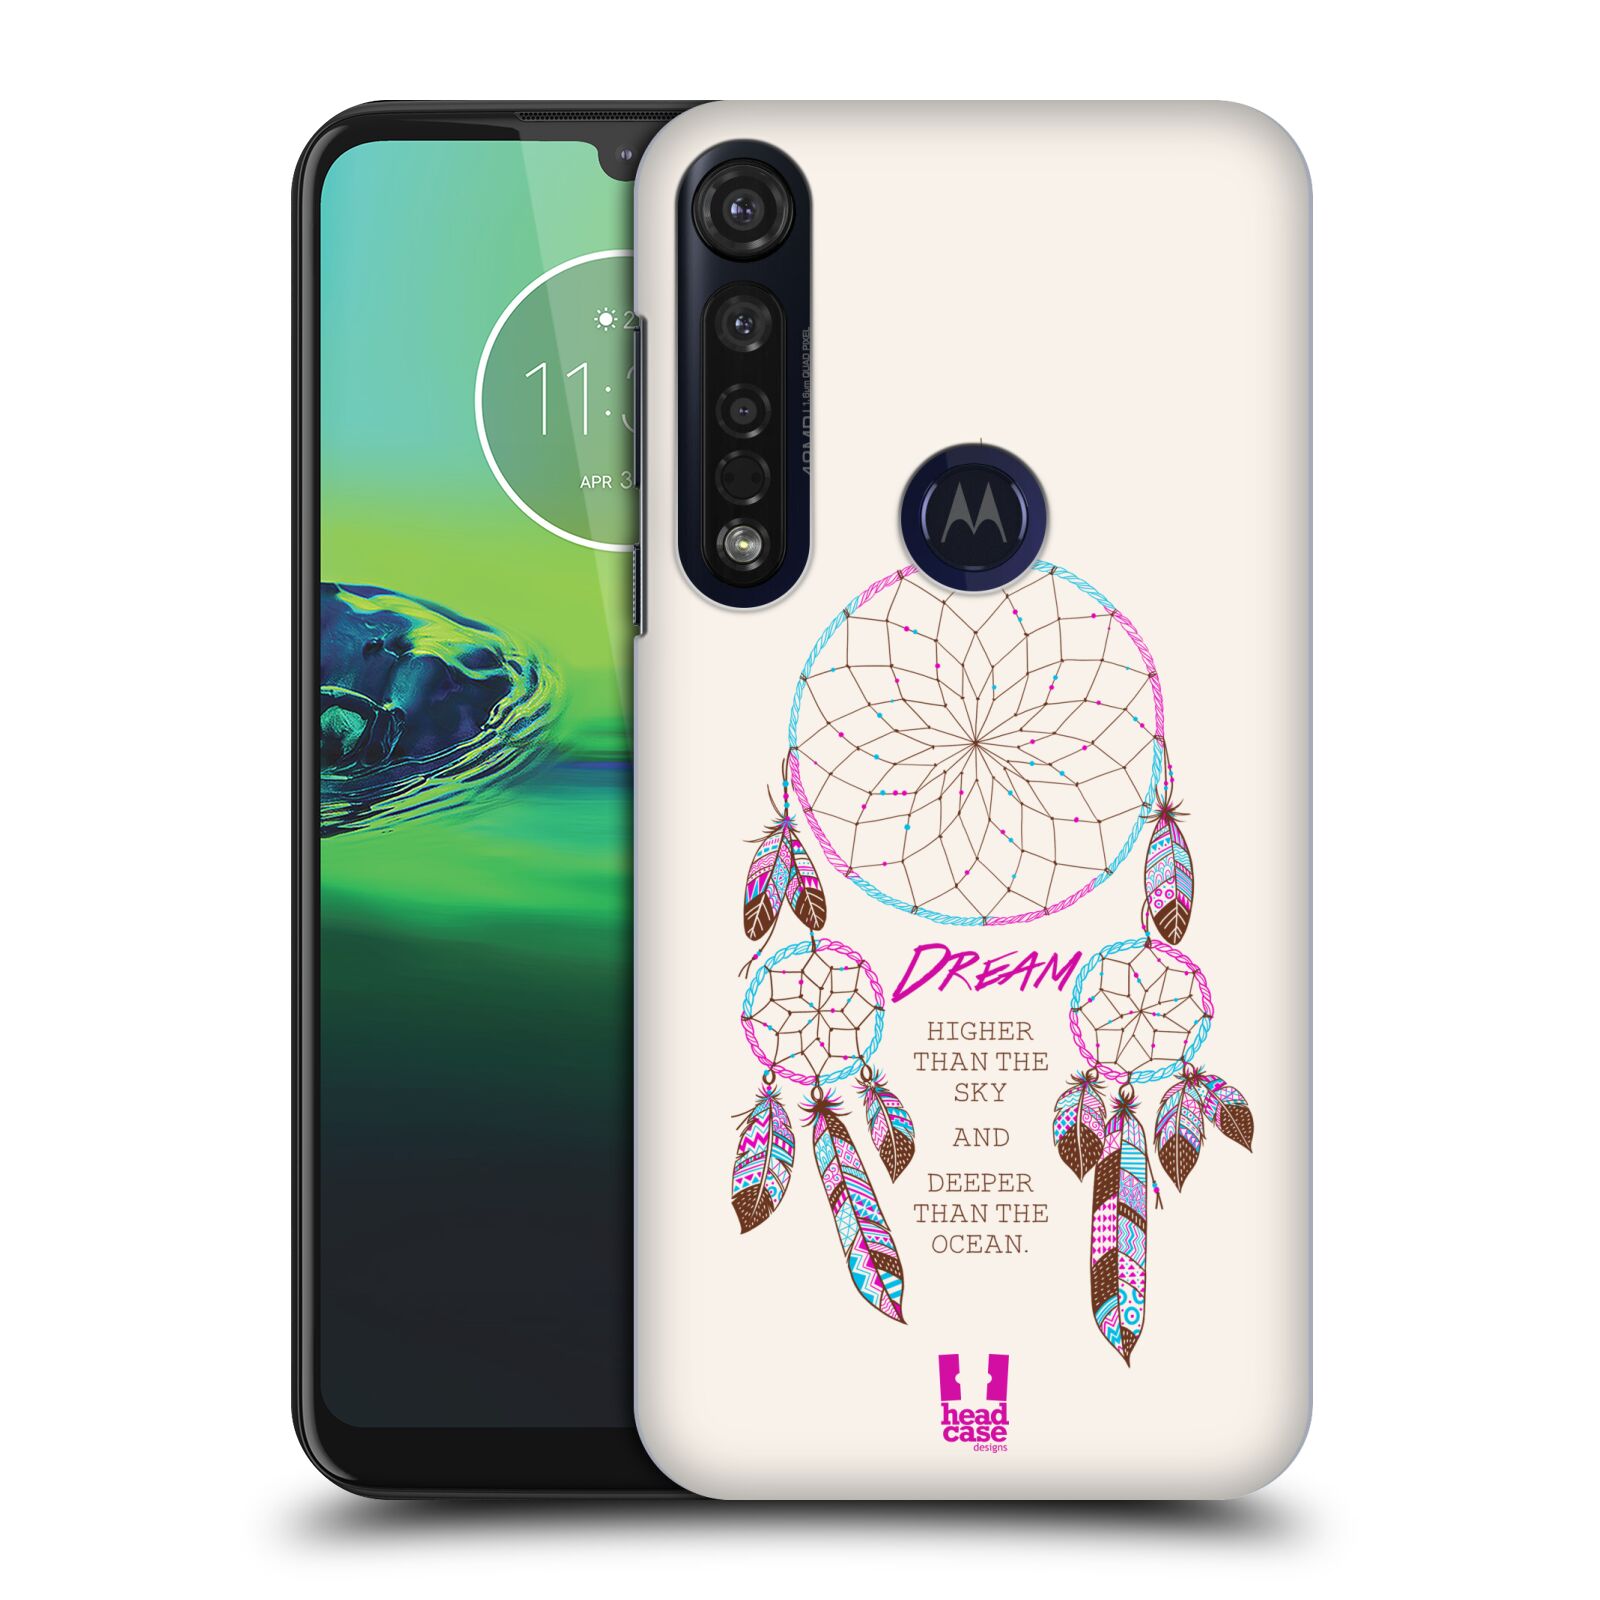 Pouzdro na mobil Motorola Moto G8 PLUS - HEAD CASE - vzor Lapač snů růžová